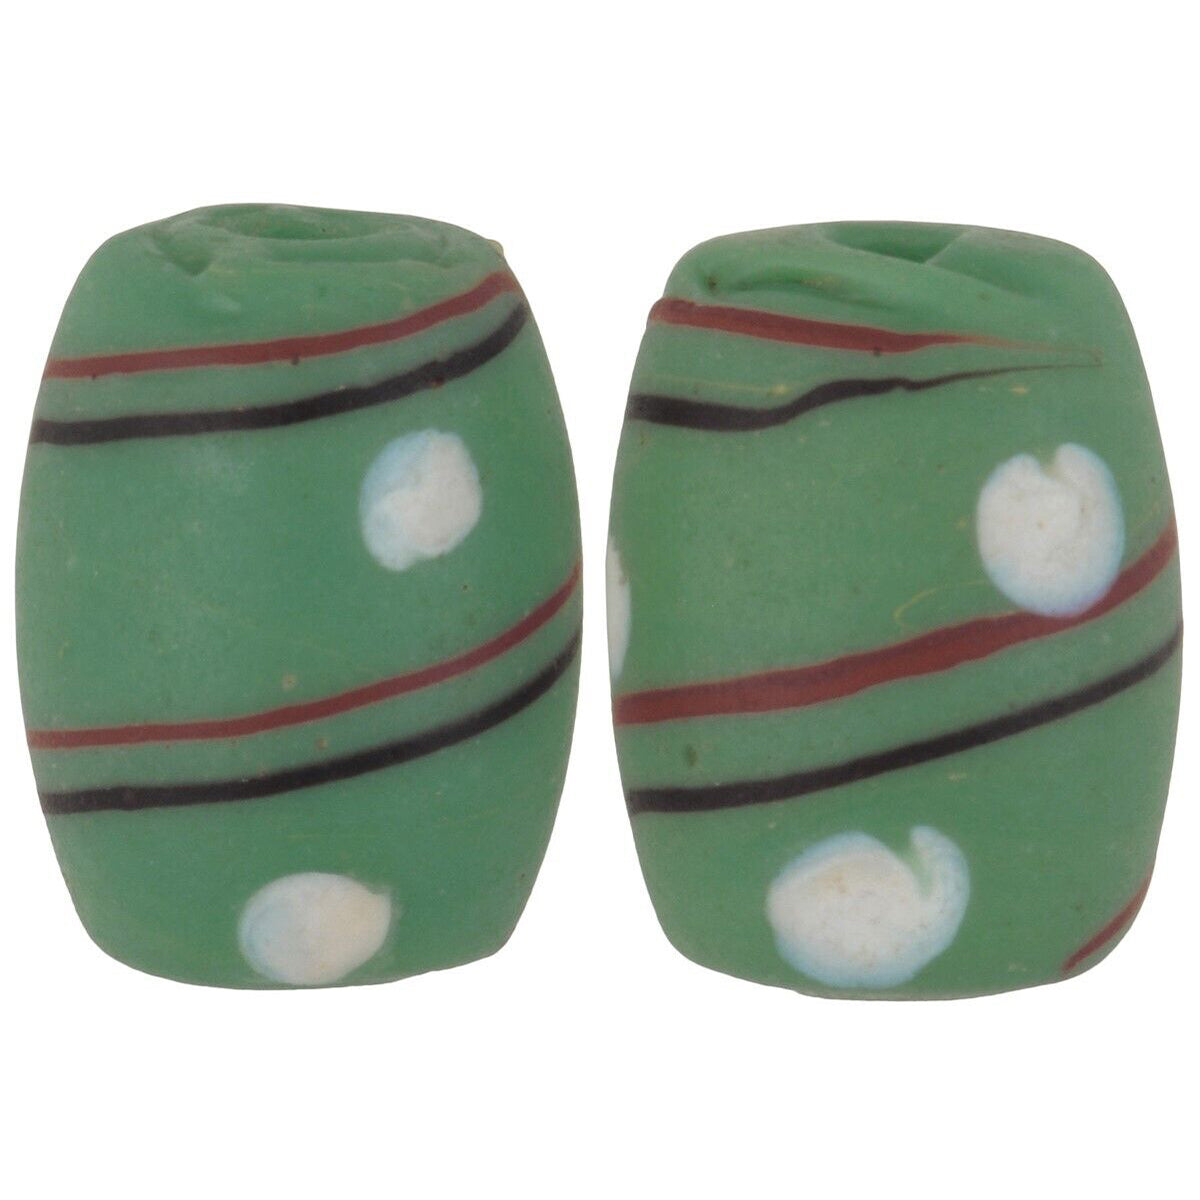 Alte afrikanische Handelsperlen, grünes ovales Auge, venezianische Glasperlen, ausgefallene Lampwork-Perlen – Tribalgh